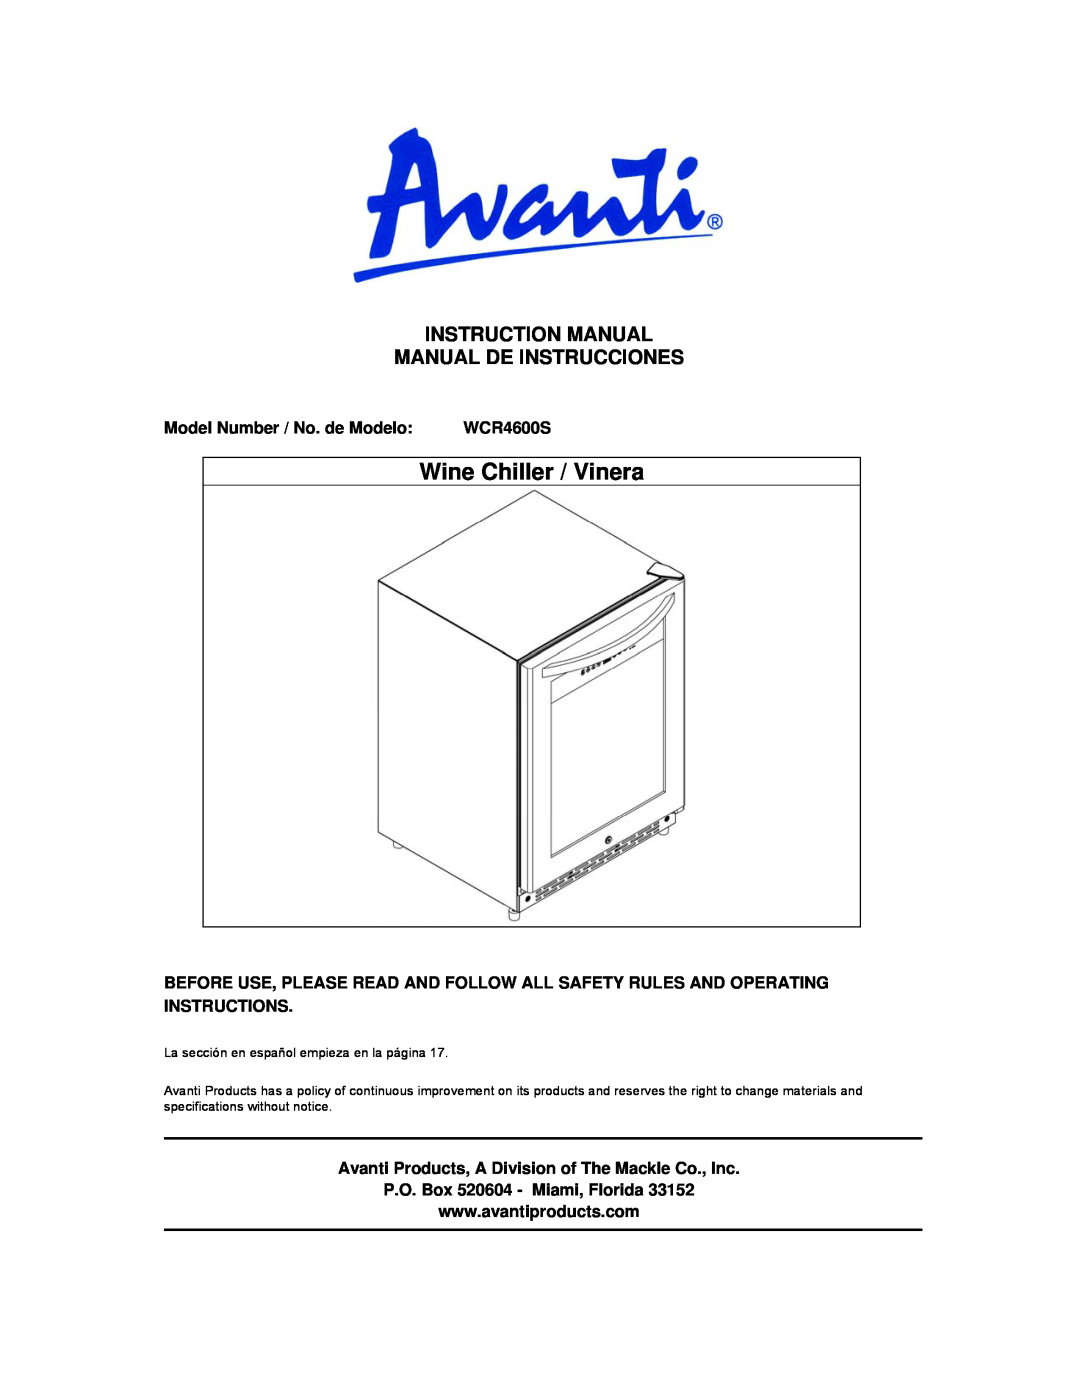 Avanti WCR4600S instruction manual Instruction Manual Manual De Instrucciones, Model Number / No. de Modelo 